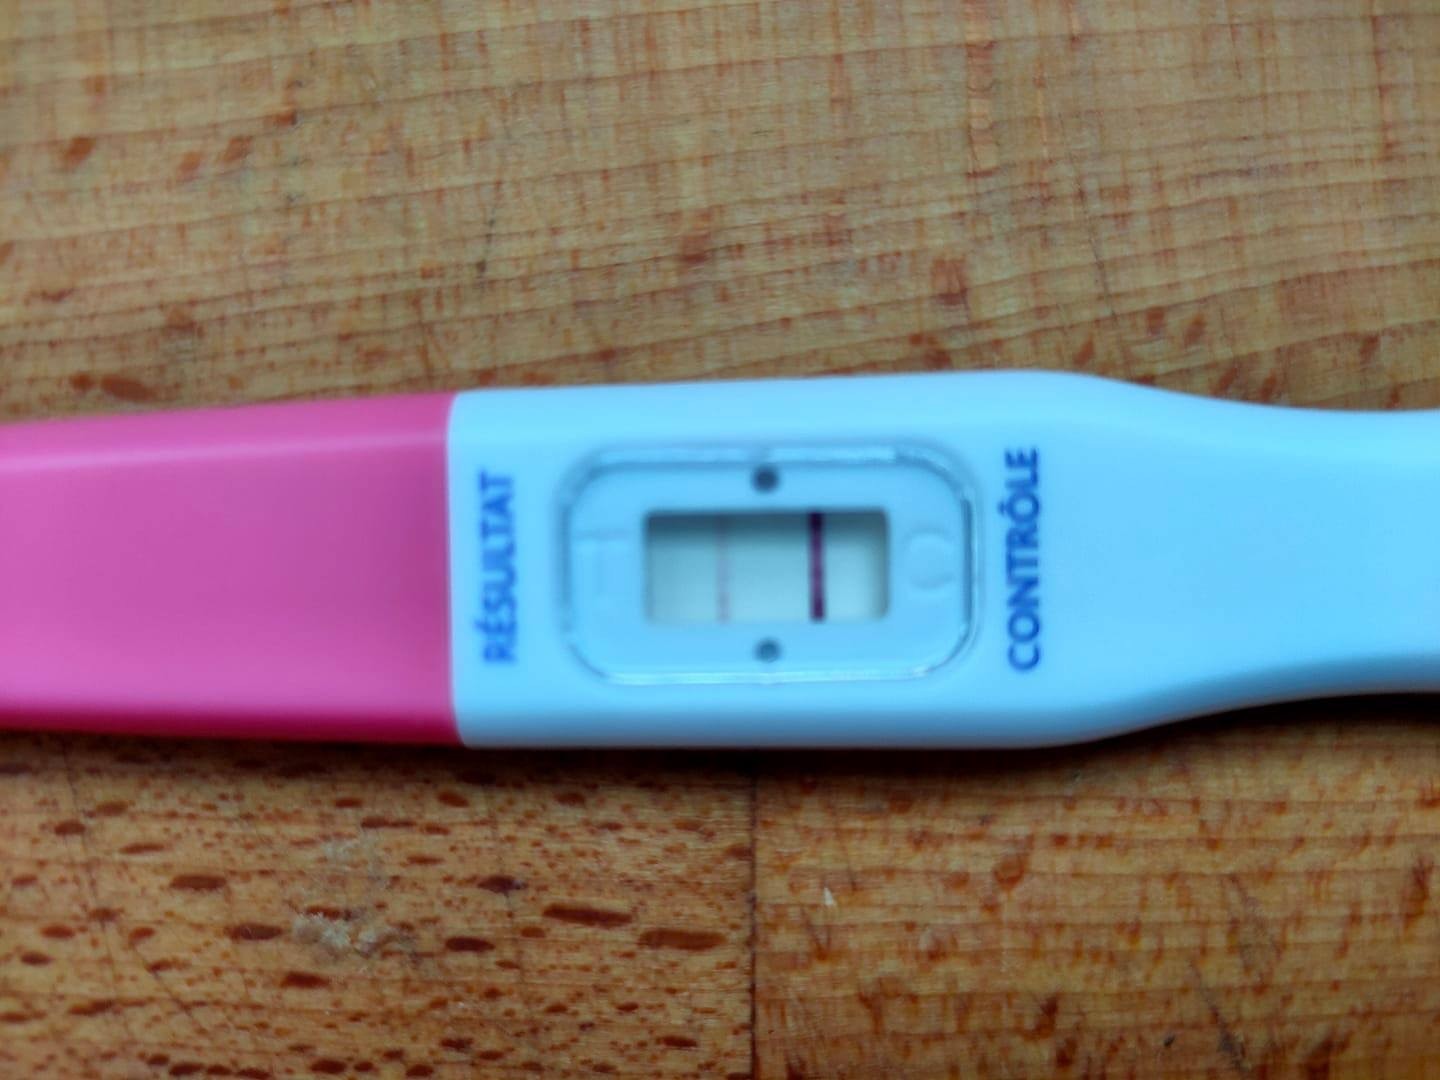 Test à 14 dpo - Tests et symptômes de grossesse - FORUM Grossesse ...